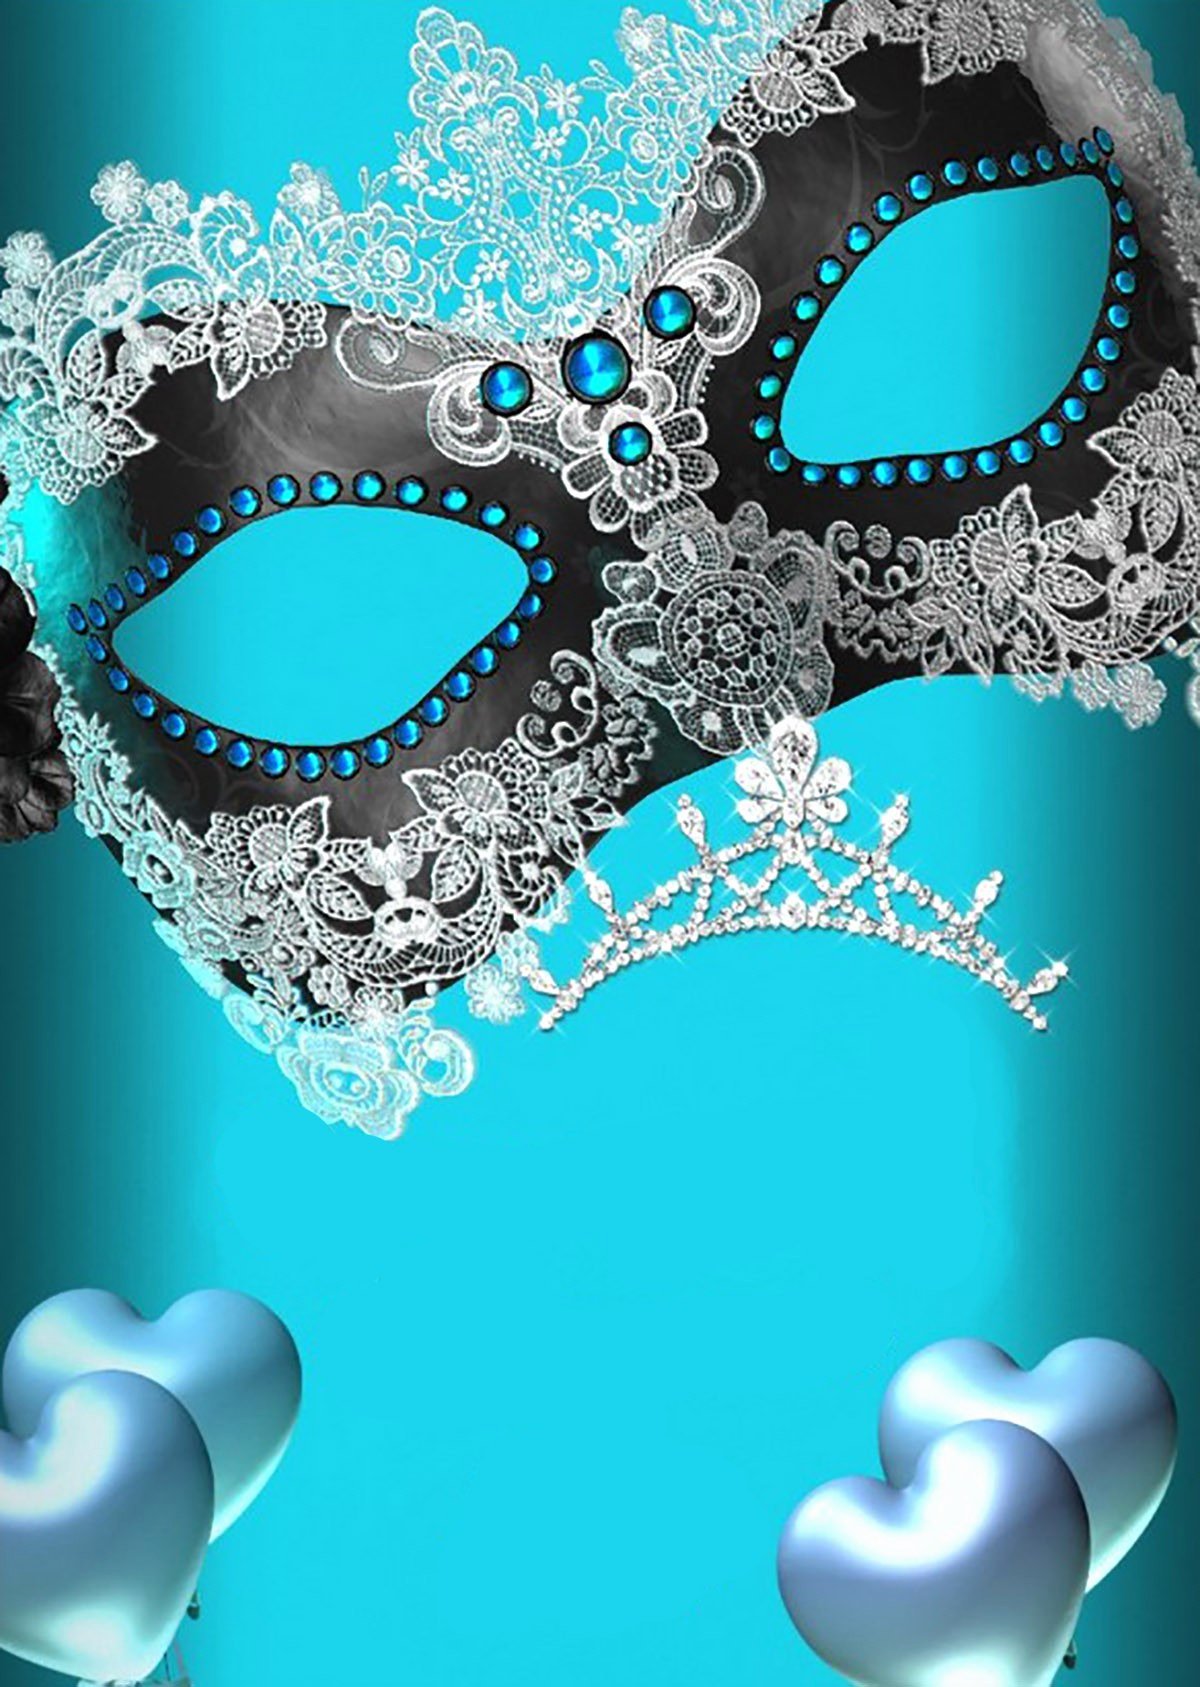 Masquerade Invitation Template Free Elegant Free Printable Masquerade Invitation Templates